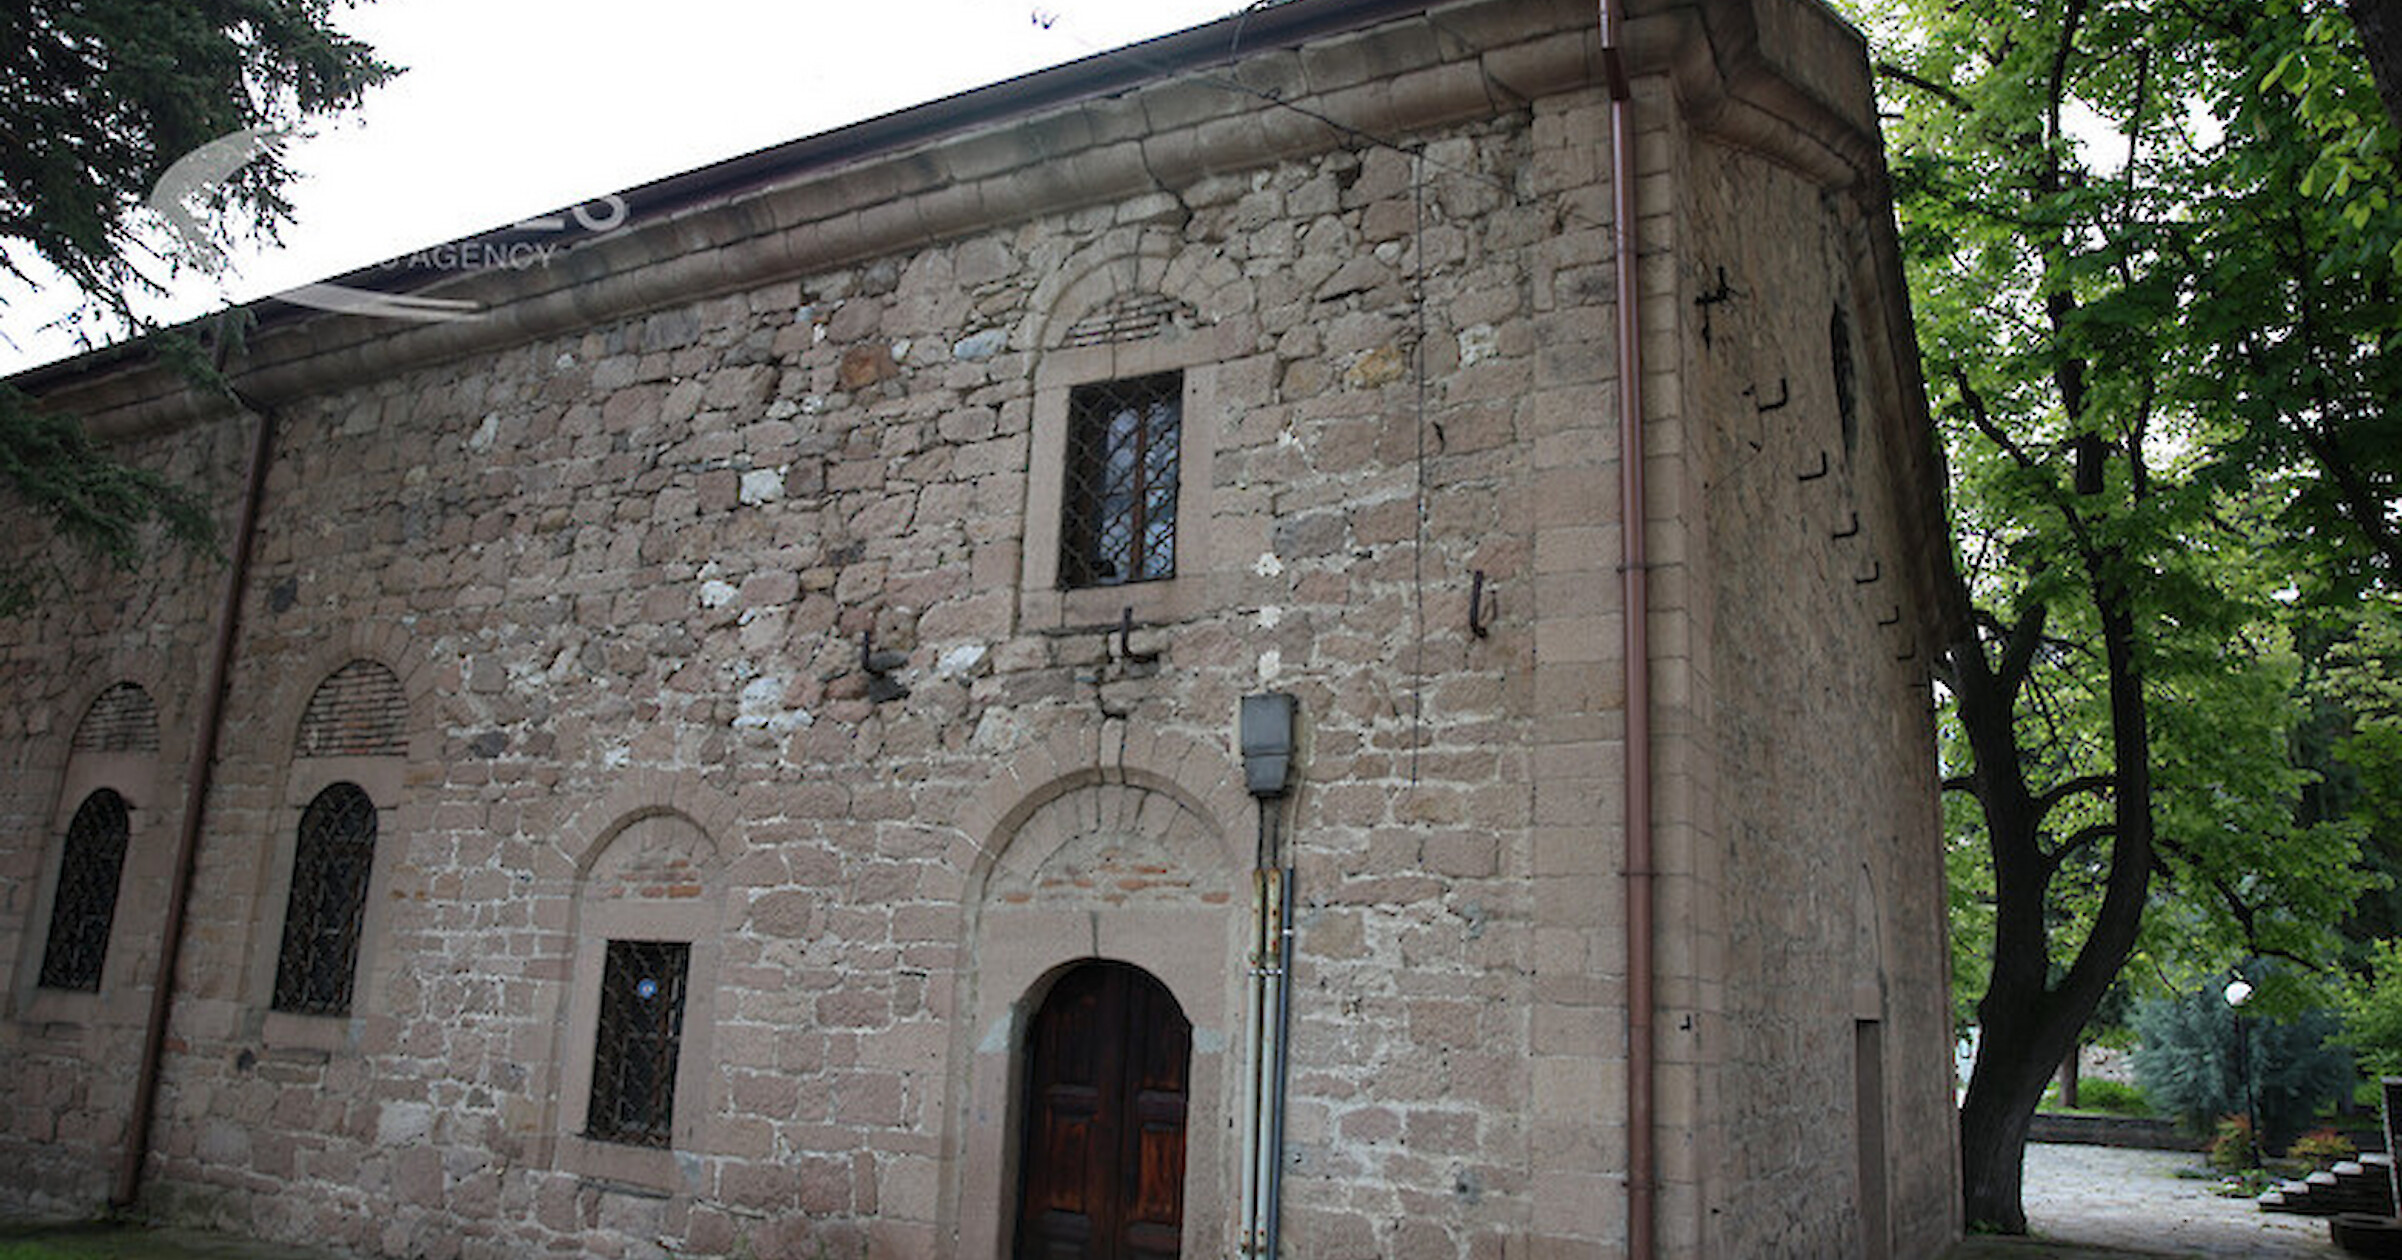 Църквата Св Архангел Михаил е единственият оцелял обект от април